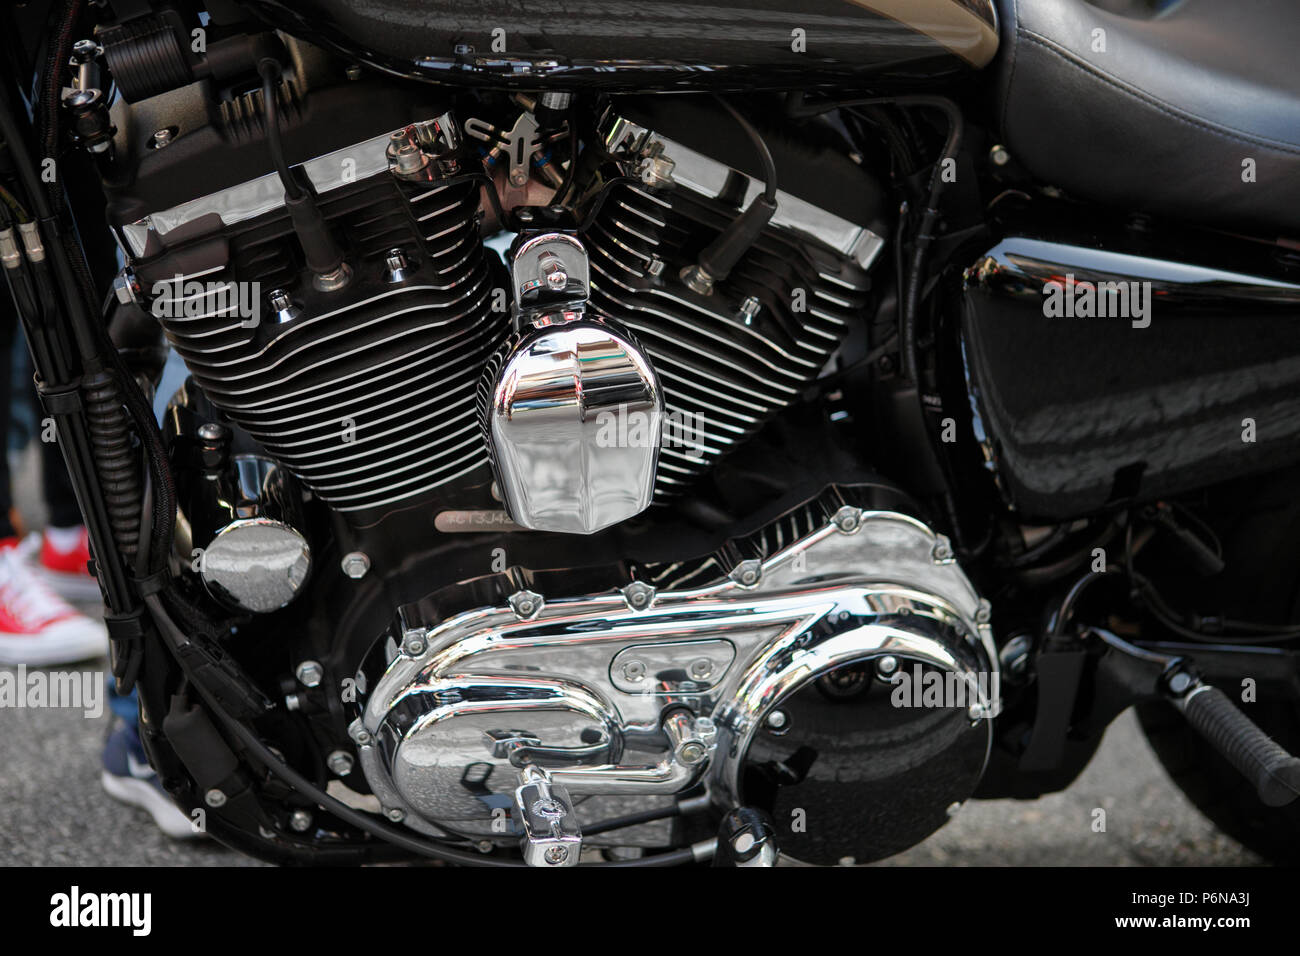 Motocicletta Harley Davidson dettaglio del motore Foto Stock